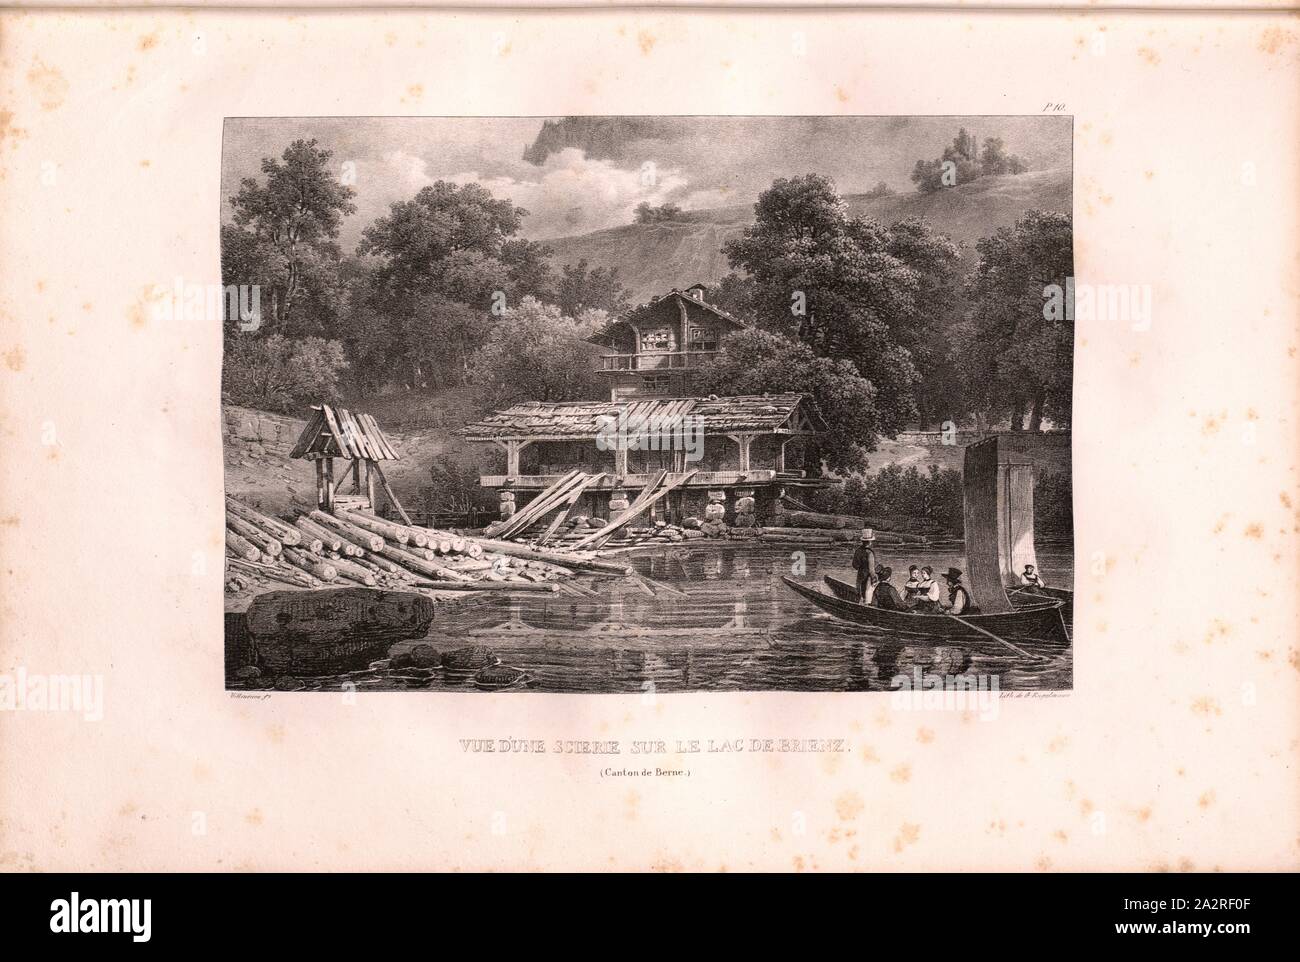 View of a sawmill on Lake Brienz, Sawing on Lake Brienz, Signed: Villeneuve, G. Engelmann, lithograph, plate 10 (vol. 1, part 1), Villeneuve, M. (ft.); Engelmann, Godefroy (lith.), 1823, Hilaire Léon Sazerac, Godefroy Engelmann: Lettres sur la Suisse (...). Paris: [s.n.], 1823-1832 Stock Photo